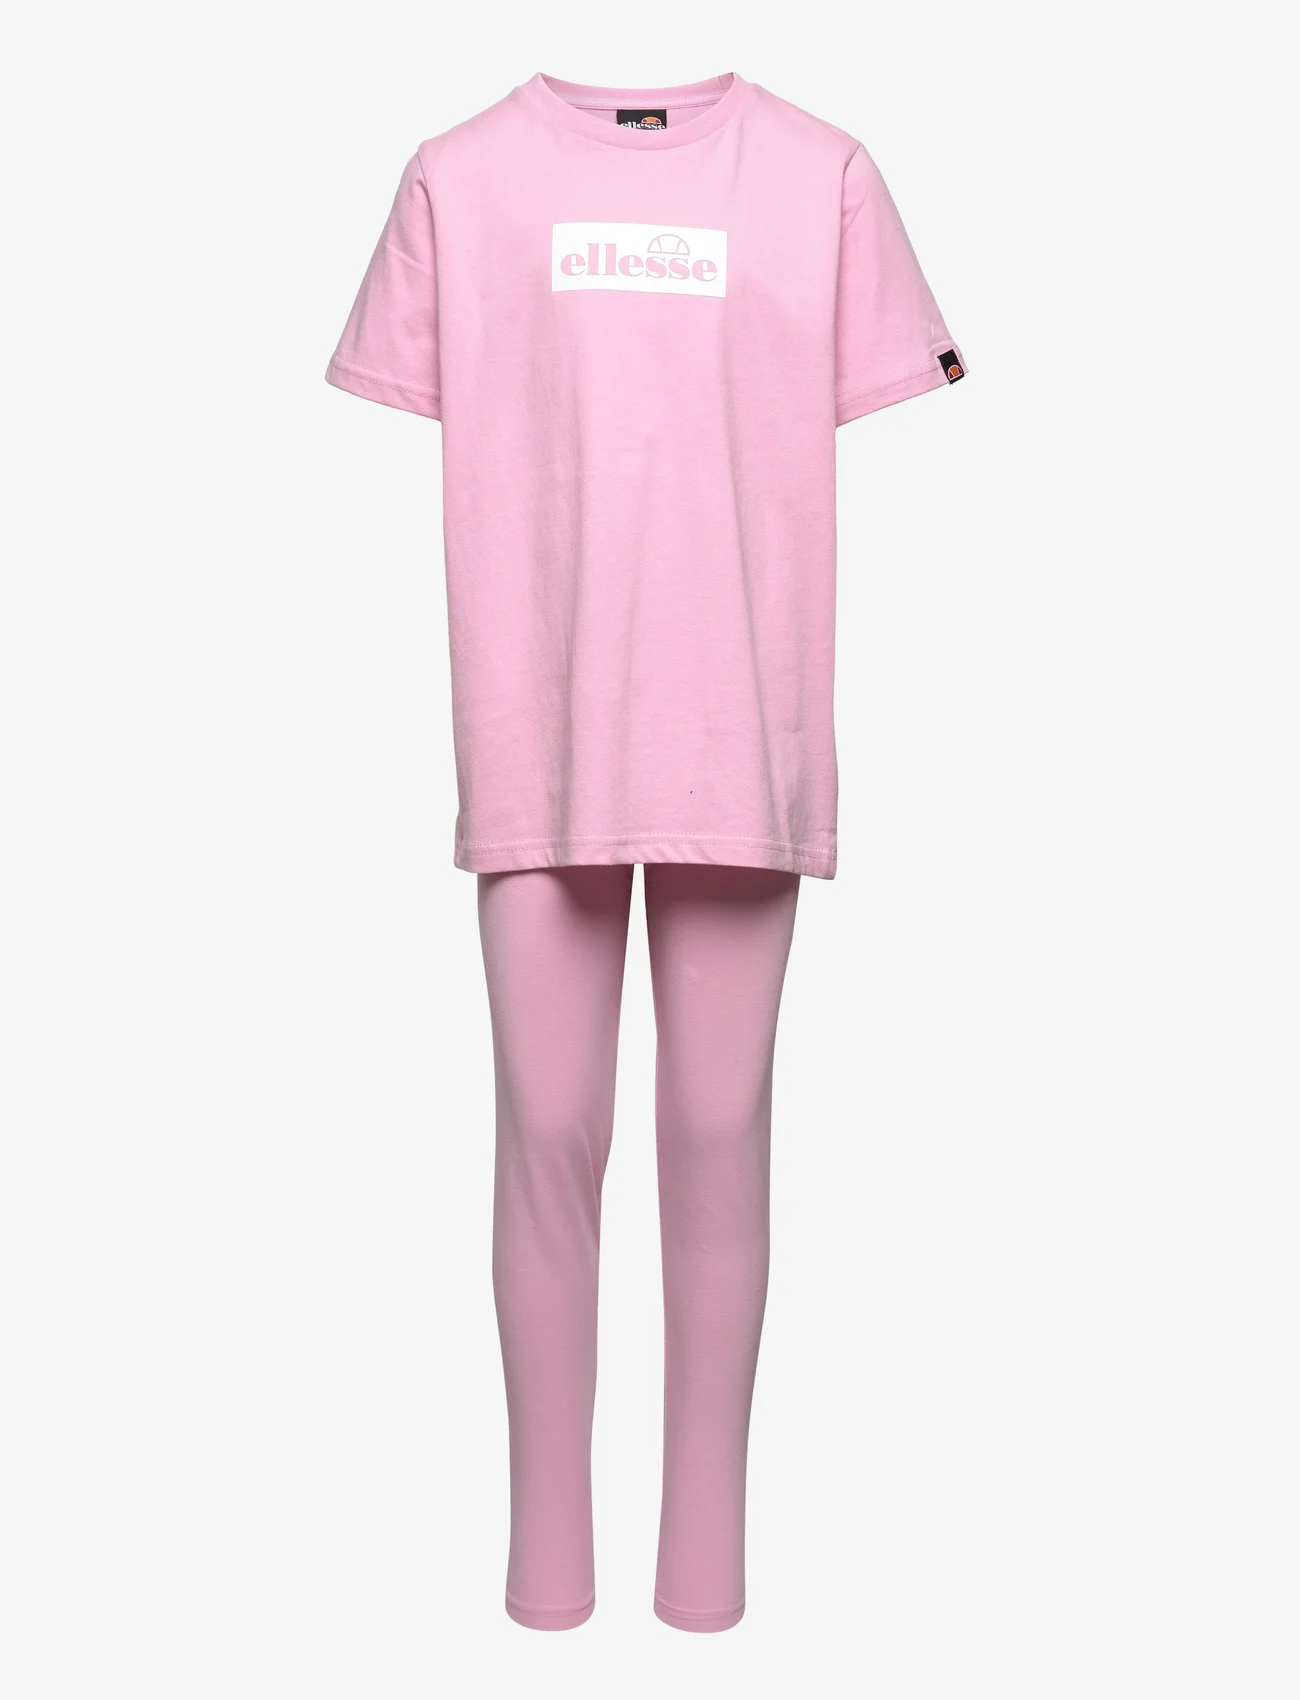 Ellesse - EL REALTA JNR LEGGING SET - sets with short-sleeved t-shirt - light pink - 0